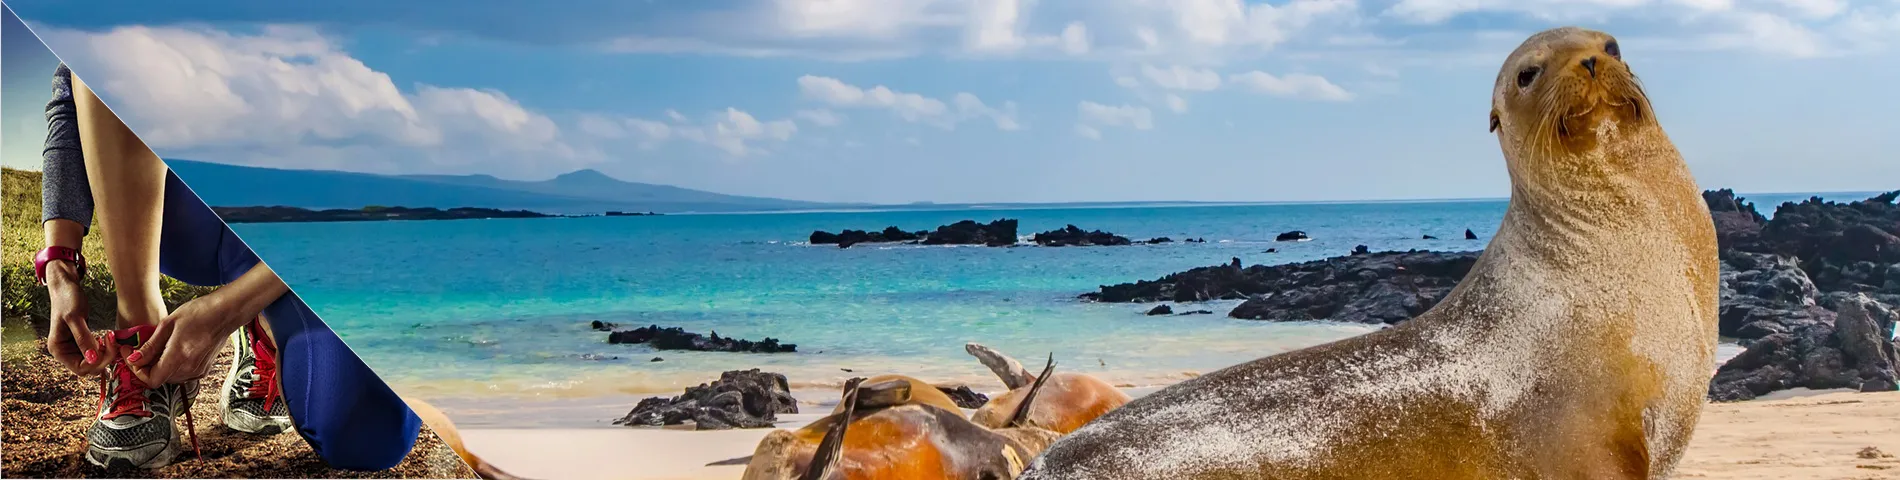 Galapagos øyene - 